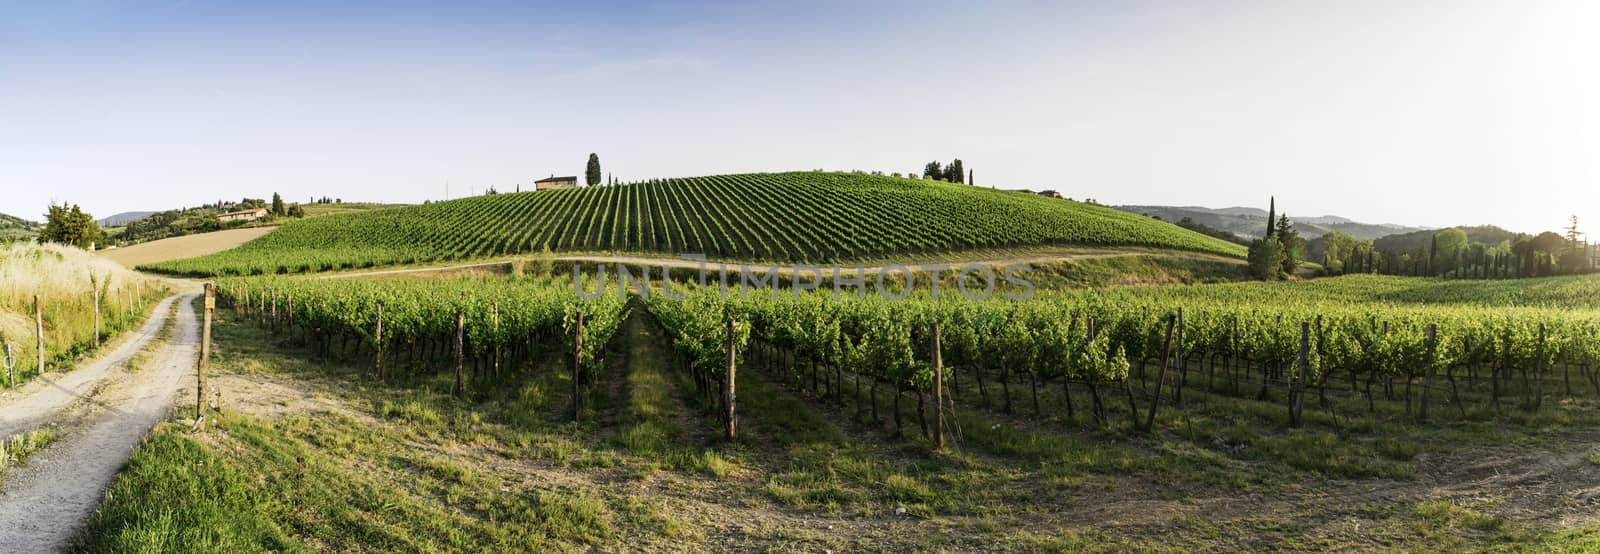 Vineyards in Tuscany by deyan_georgiev